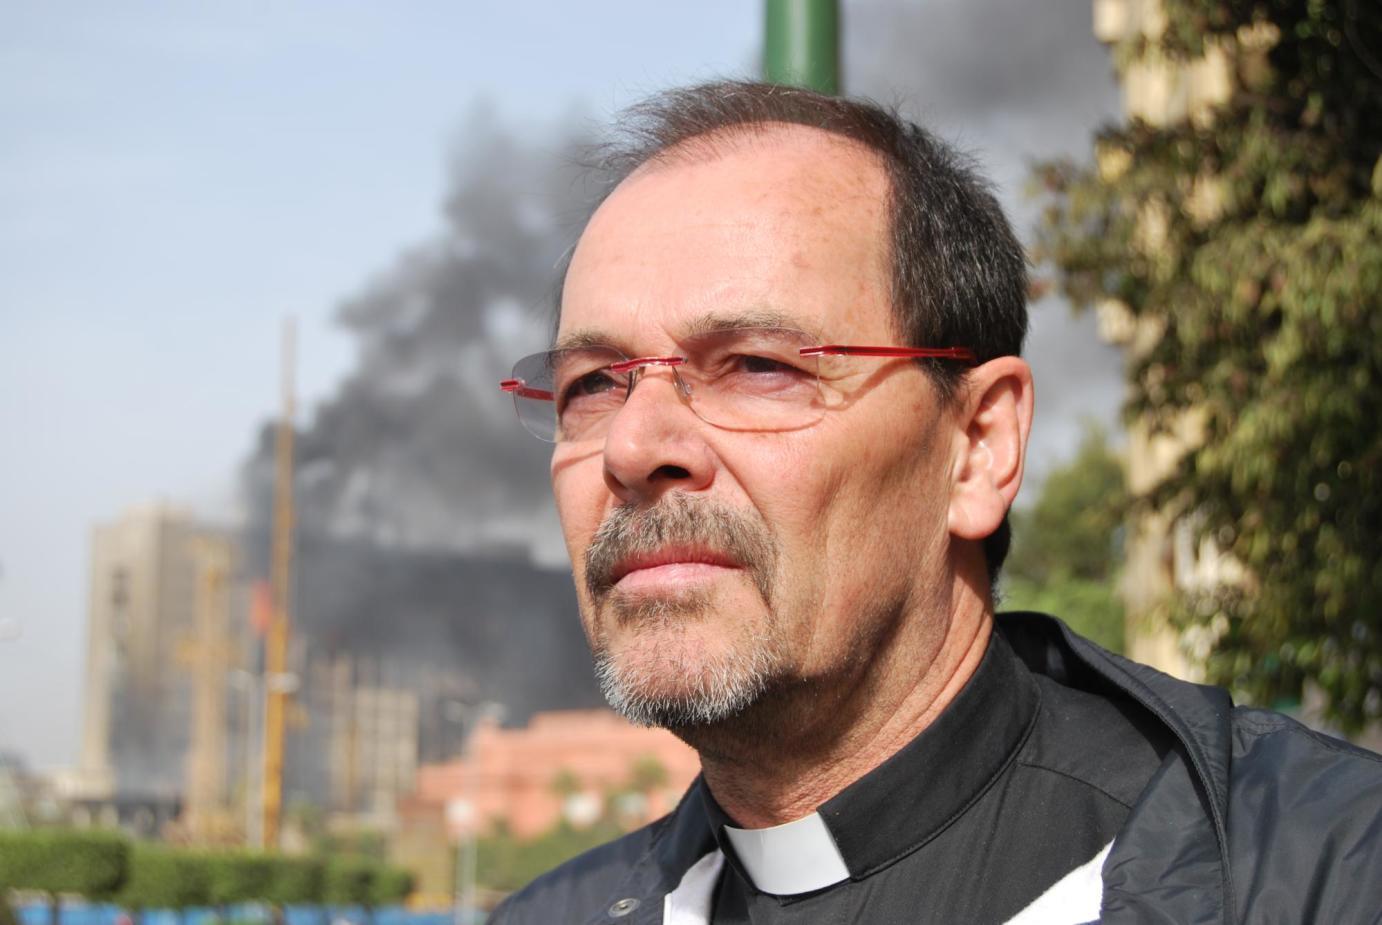 Der diesjährige Missio-Gast im Bistum Mainz ist Monsignore Joachim Schroedel ,der seit 18 Jahren Seelsorger in Ägypten ist. Das Bild zeigt ihn im Januar 2011 zu Beginn der Revolution auf dem Tahirplatz in Kairo.